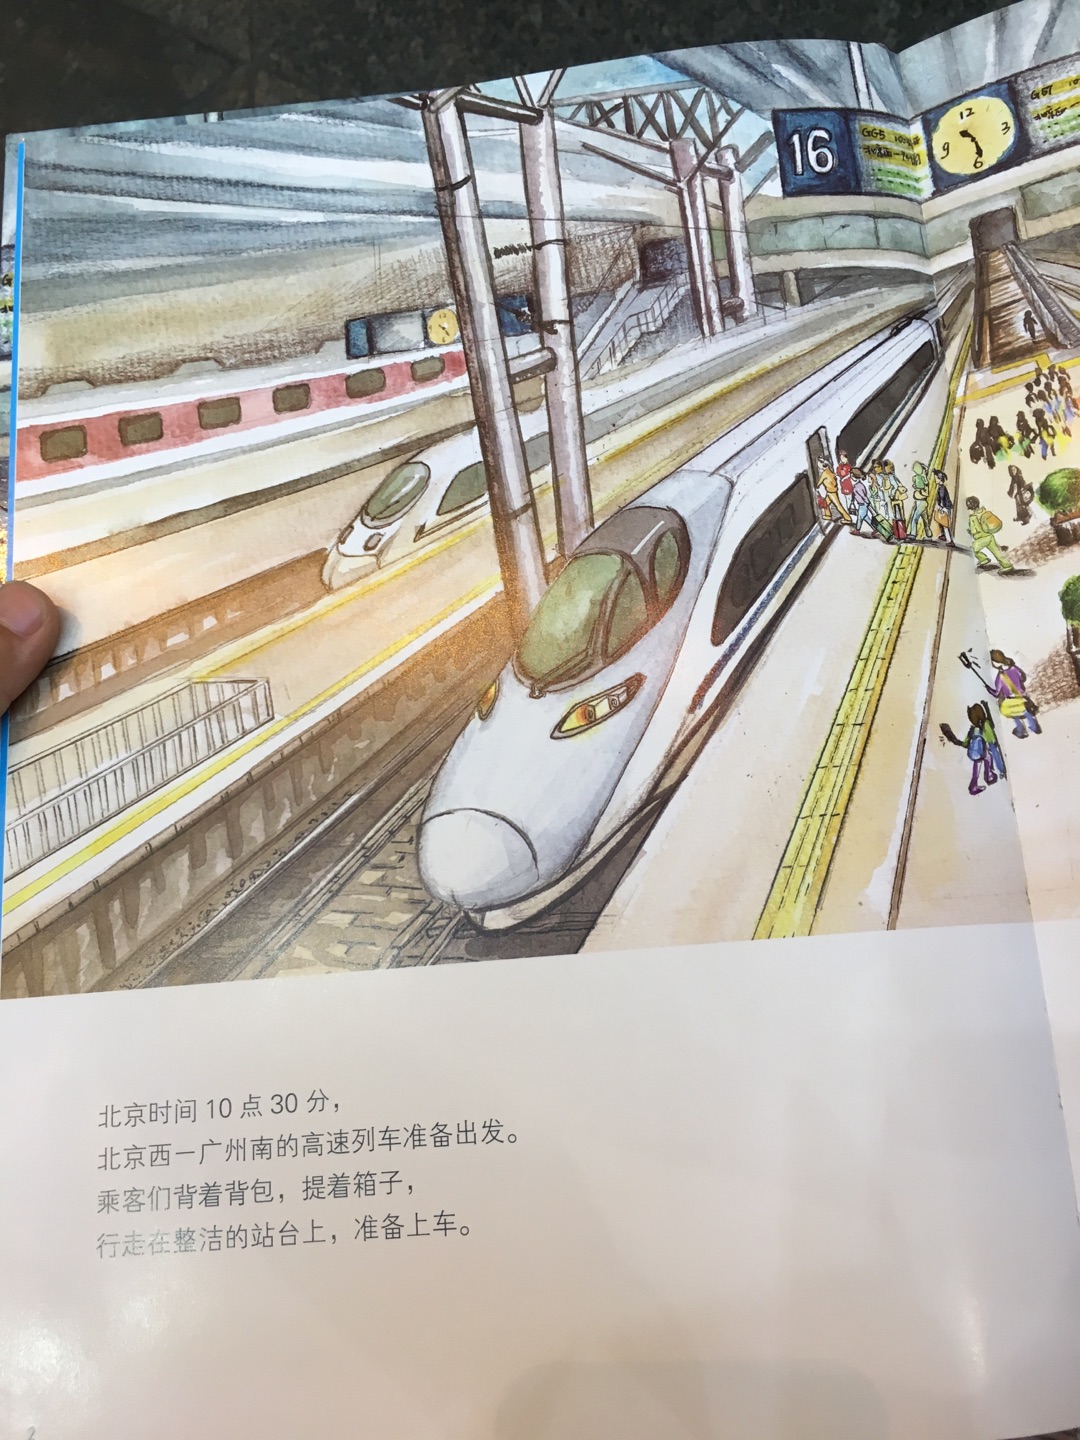 孩子超喜欢高铁，这书其的很不错，图文并茂地介绍了高铁，很好，值得购买。